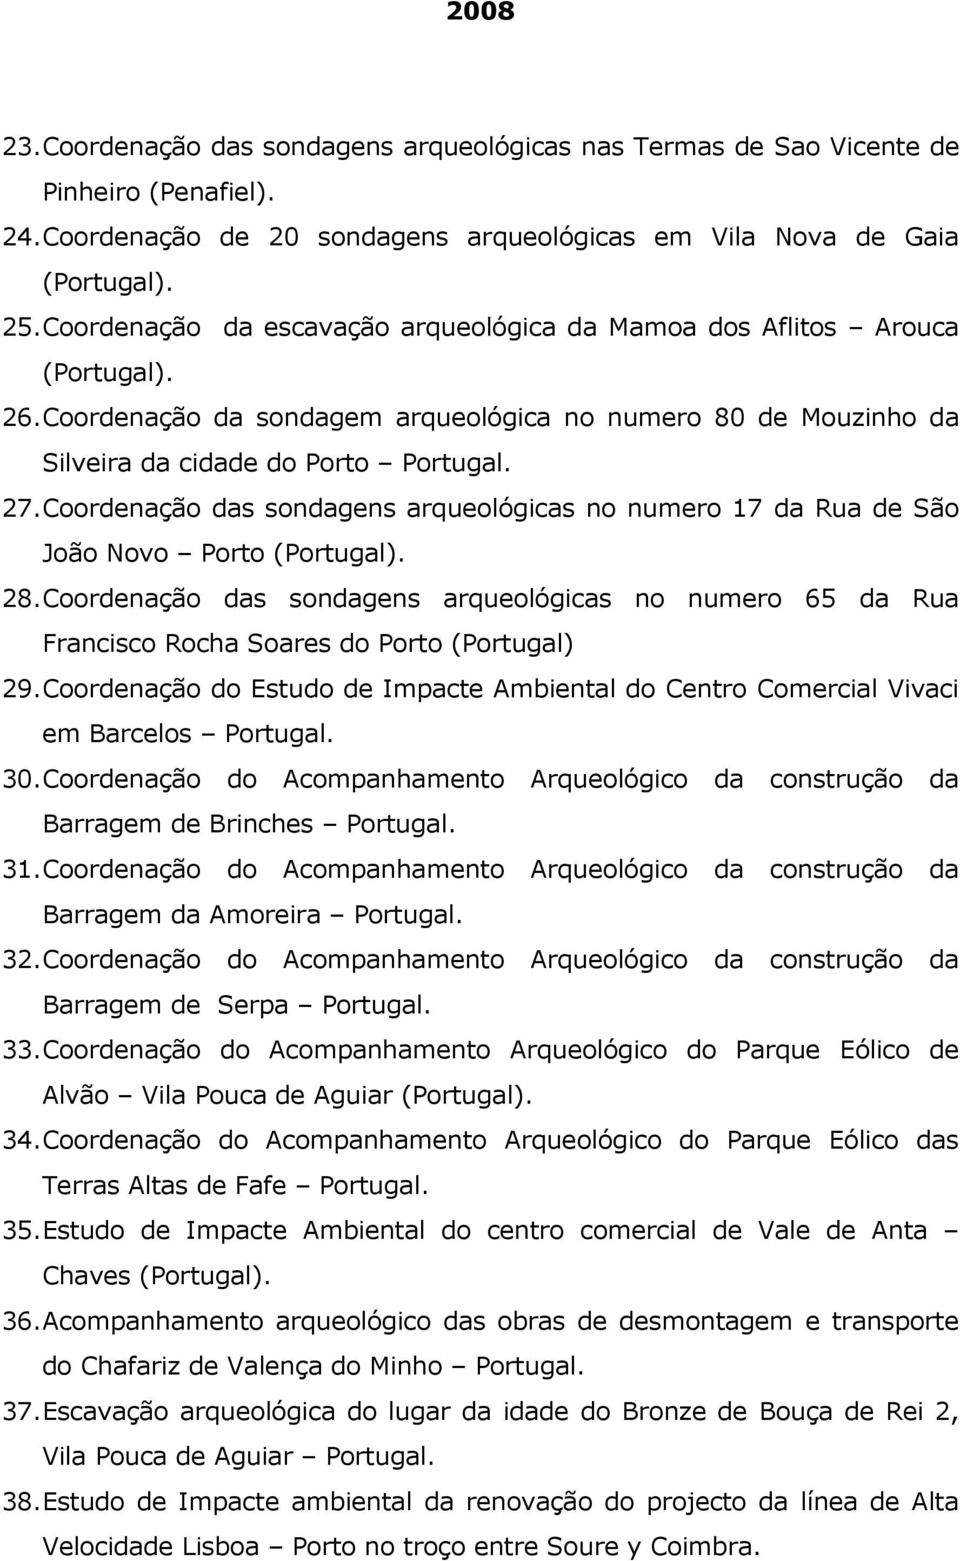 Coordenação das sondagens arqueológicas no numero 17 da Rua de São João Novo Porto 28. Coordenação das sondagens arqueológicas no numero 65 da Rua Francisco Rocha Soares do Porto (Portugal) 29.